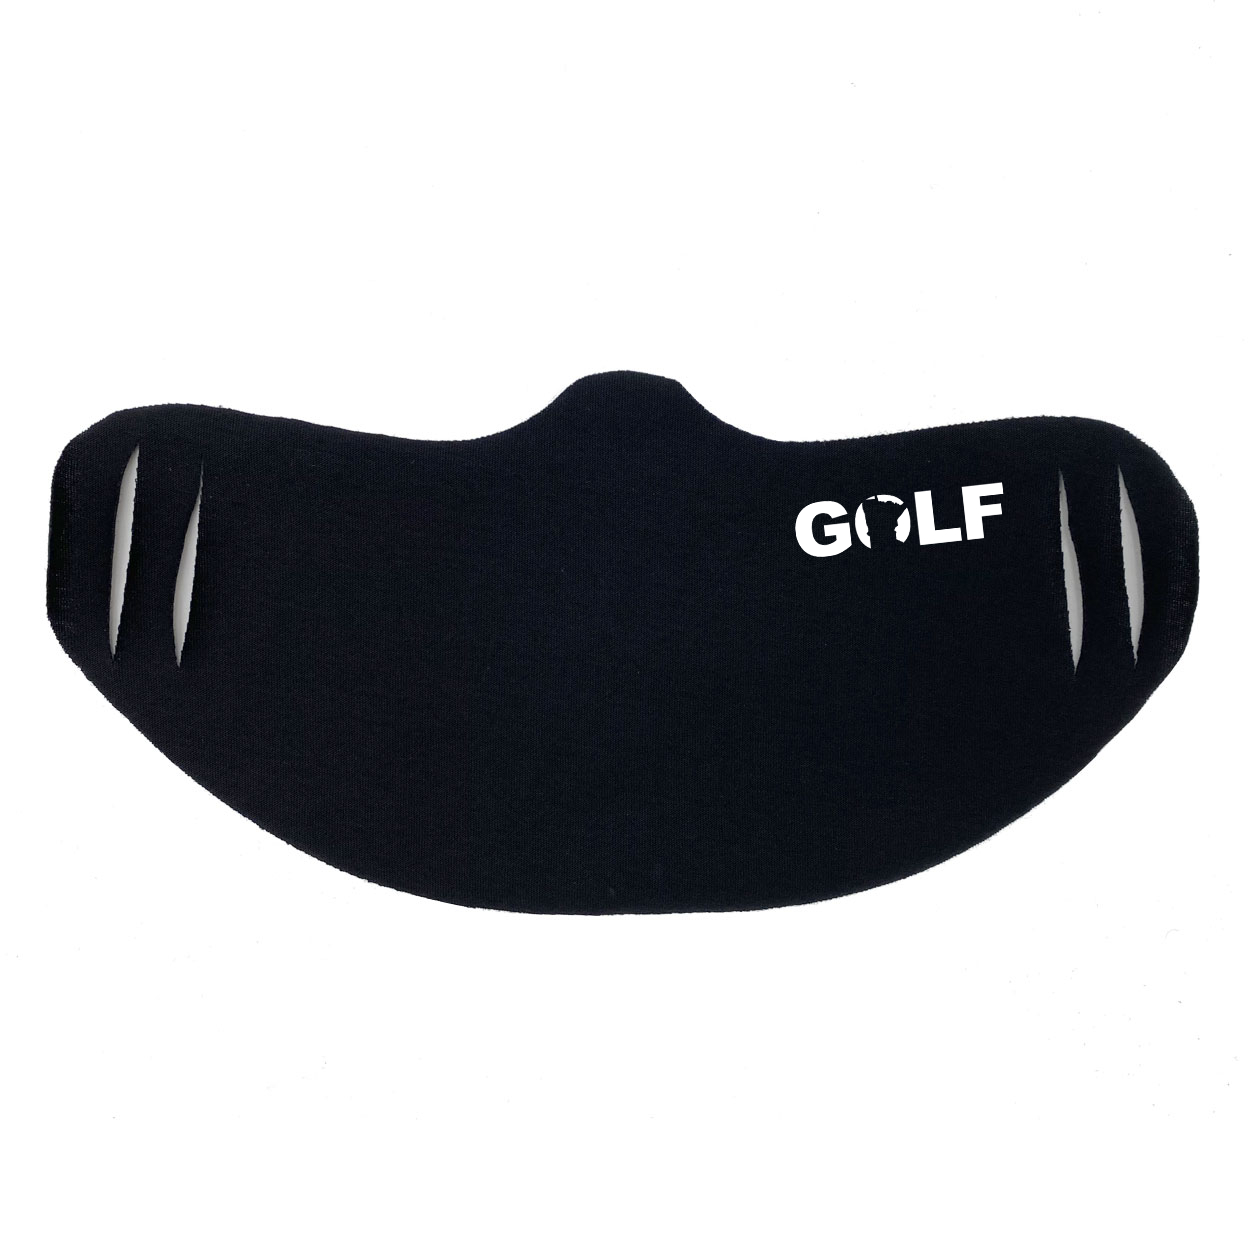 Golf Minnesota Ultra Lightweight Face Mask Cover Black (White Logo)